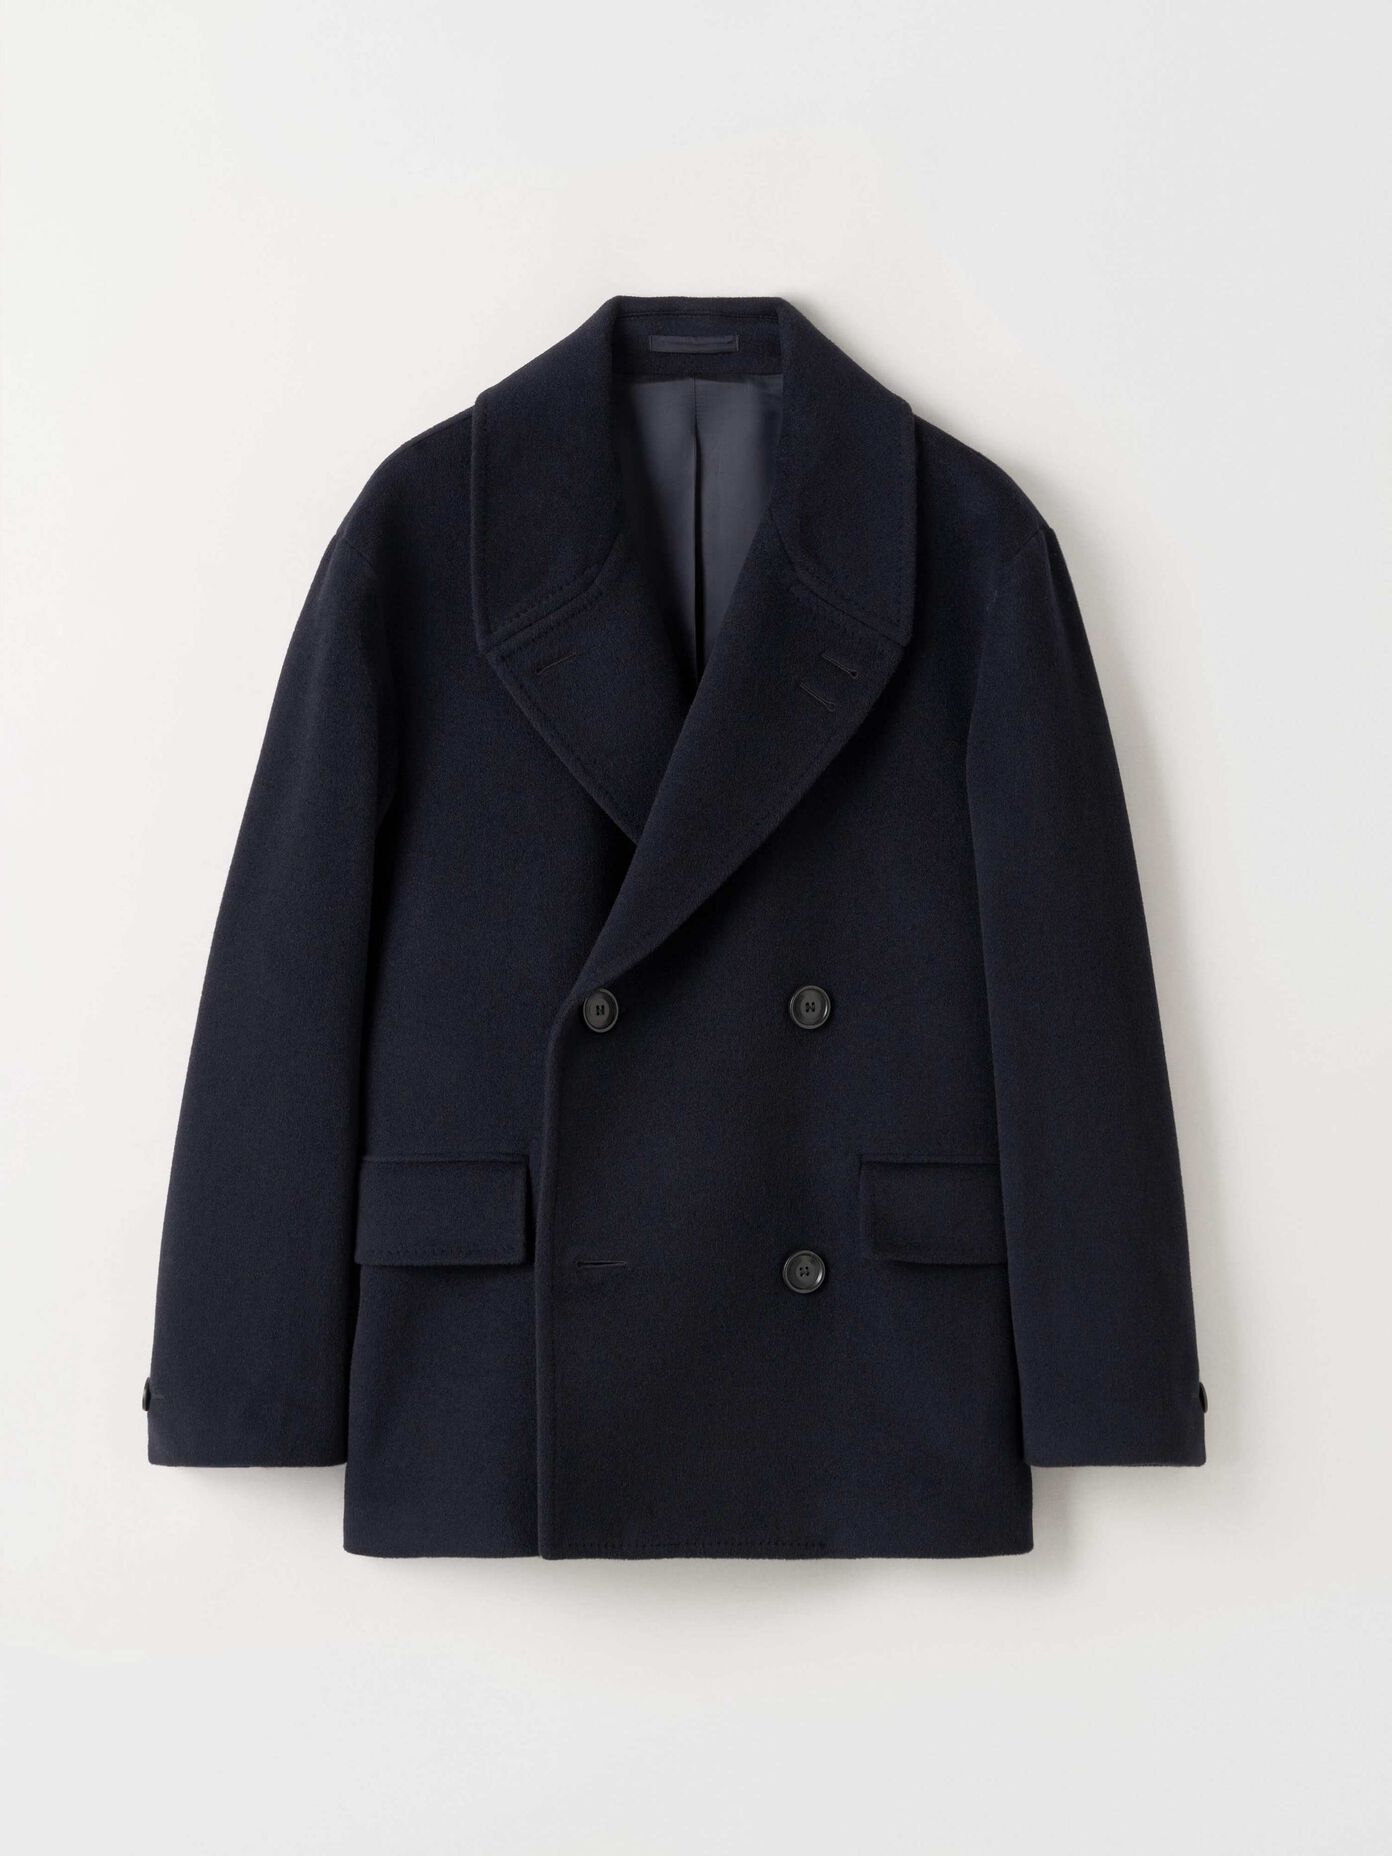 Men’s outerwear. Coats, jackets & vests | Tiger of Sweden